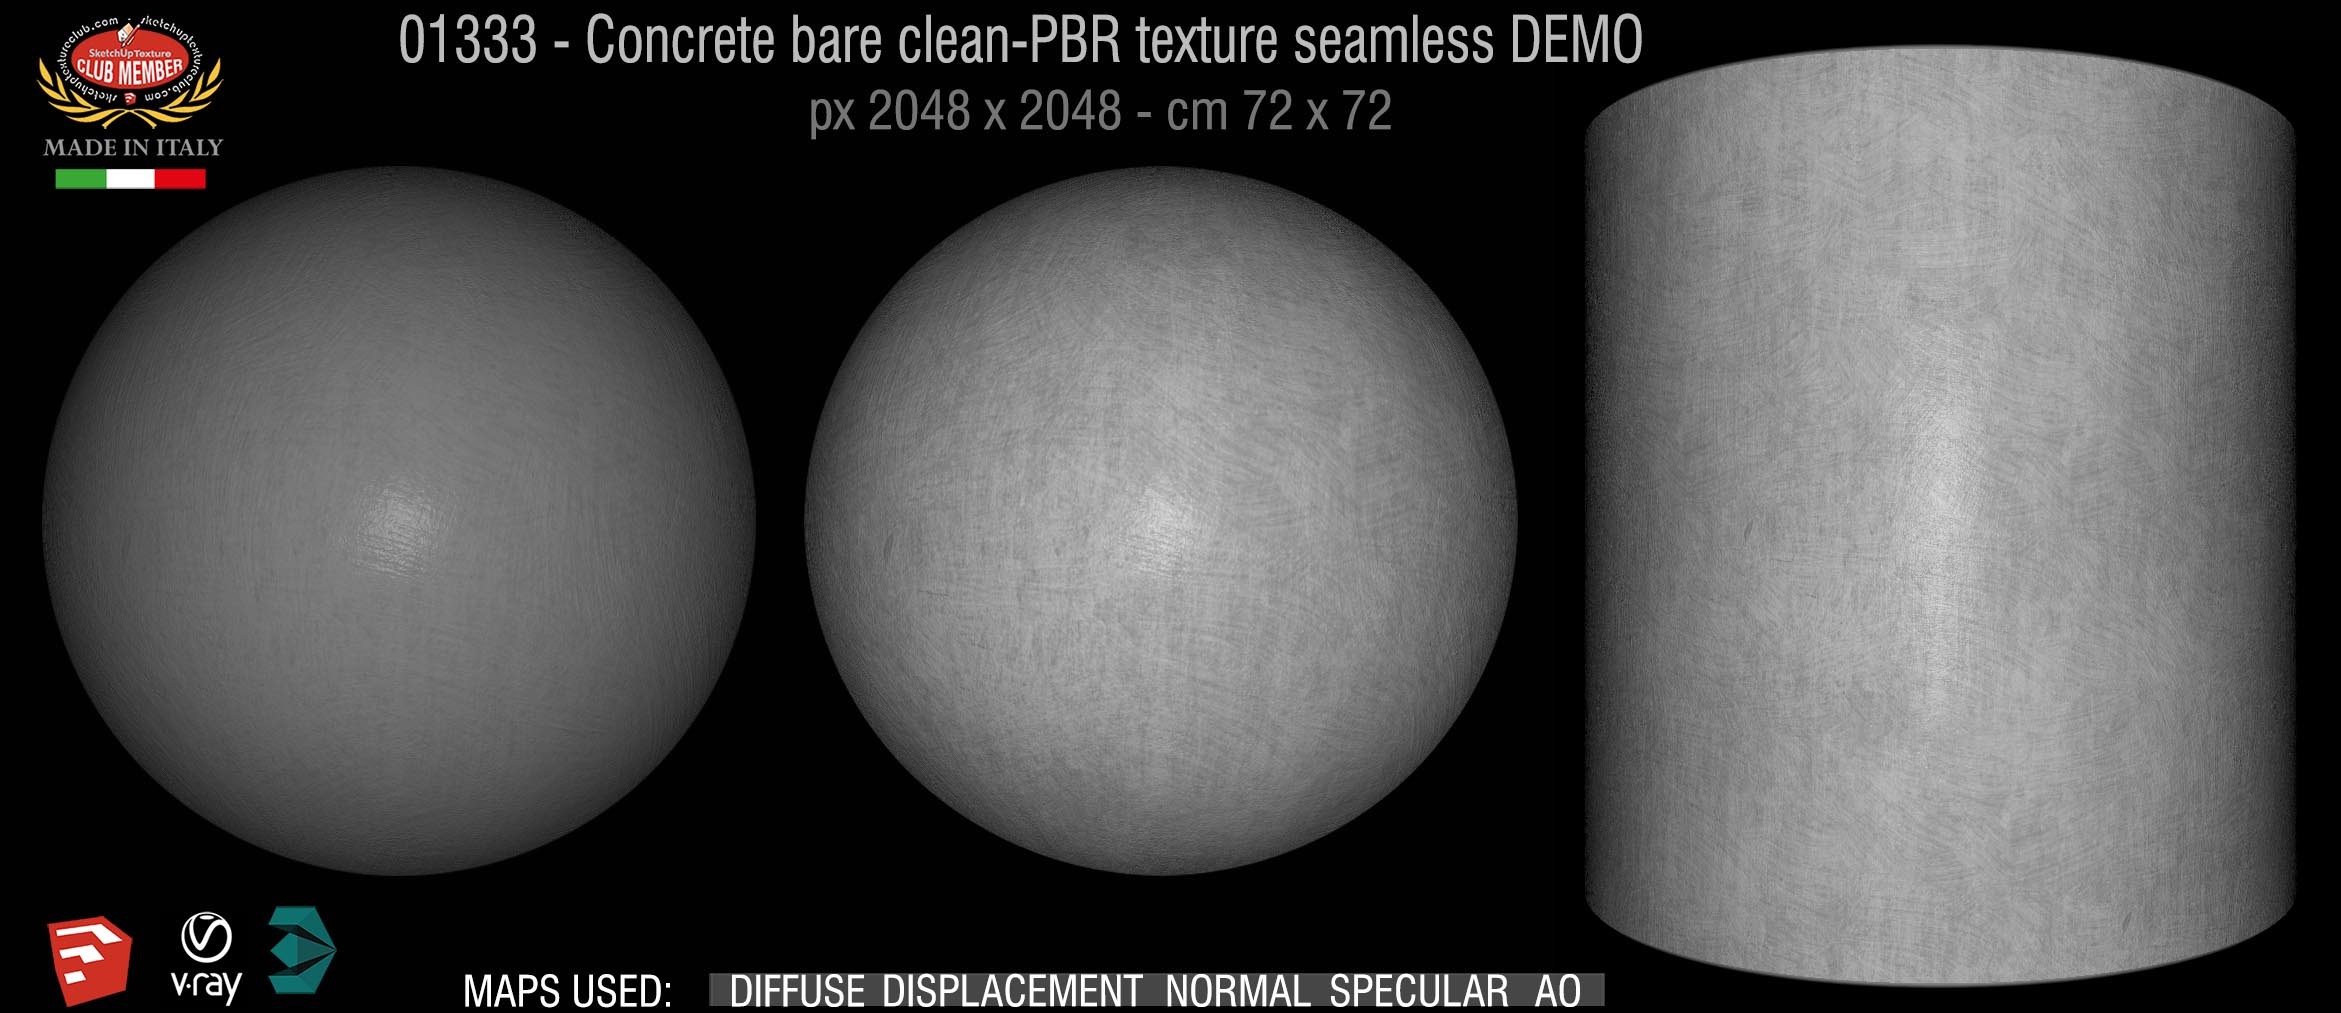 01333 Concrete bare clean-PBR texture seamless DEMO